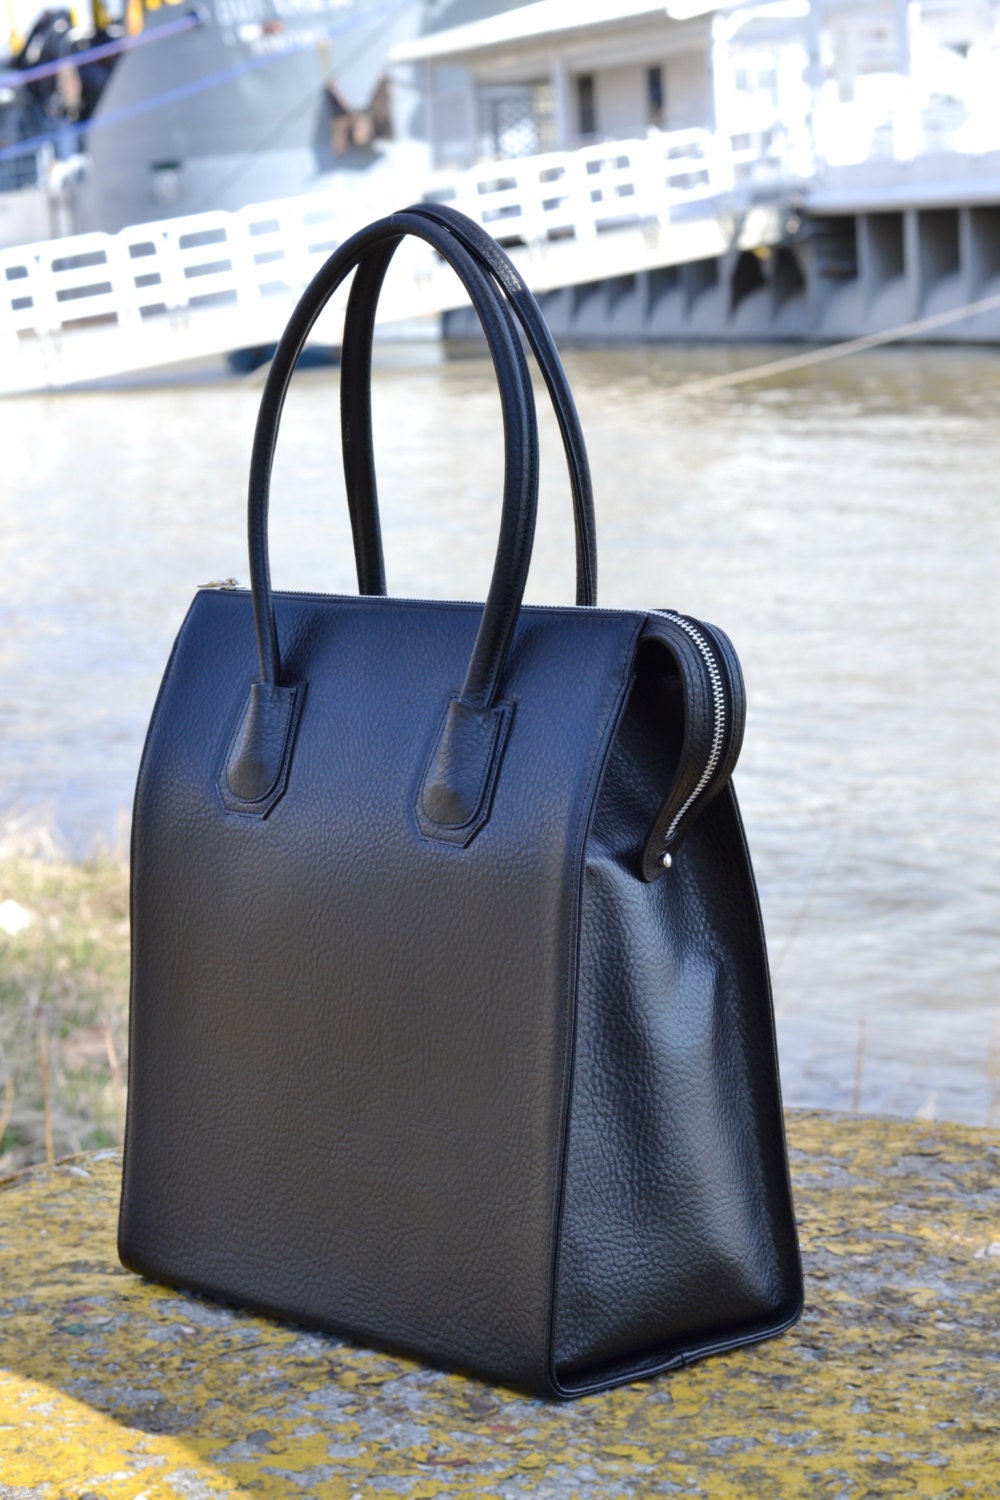 BLACK LEATHER HANDBAG Black Leather Bag Leather Tote Bag | Etsy